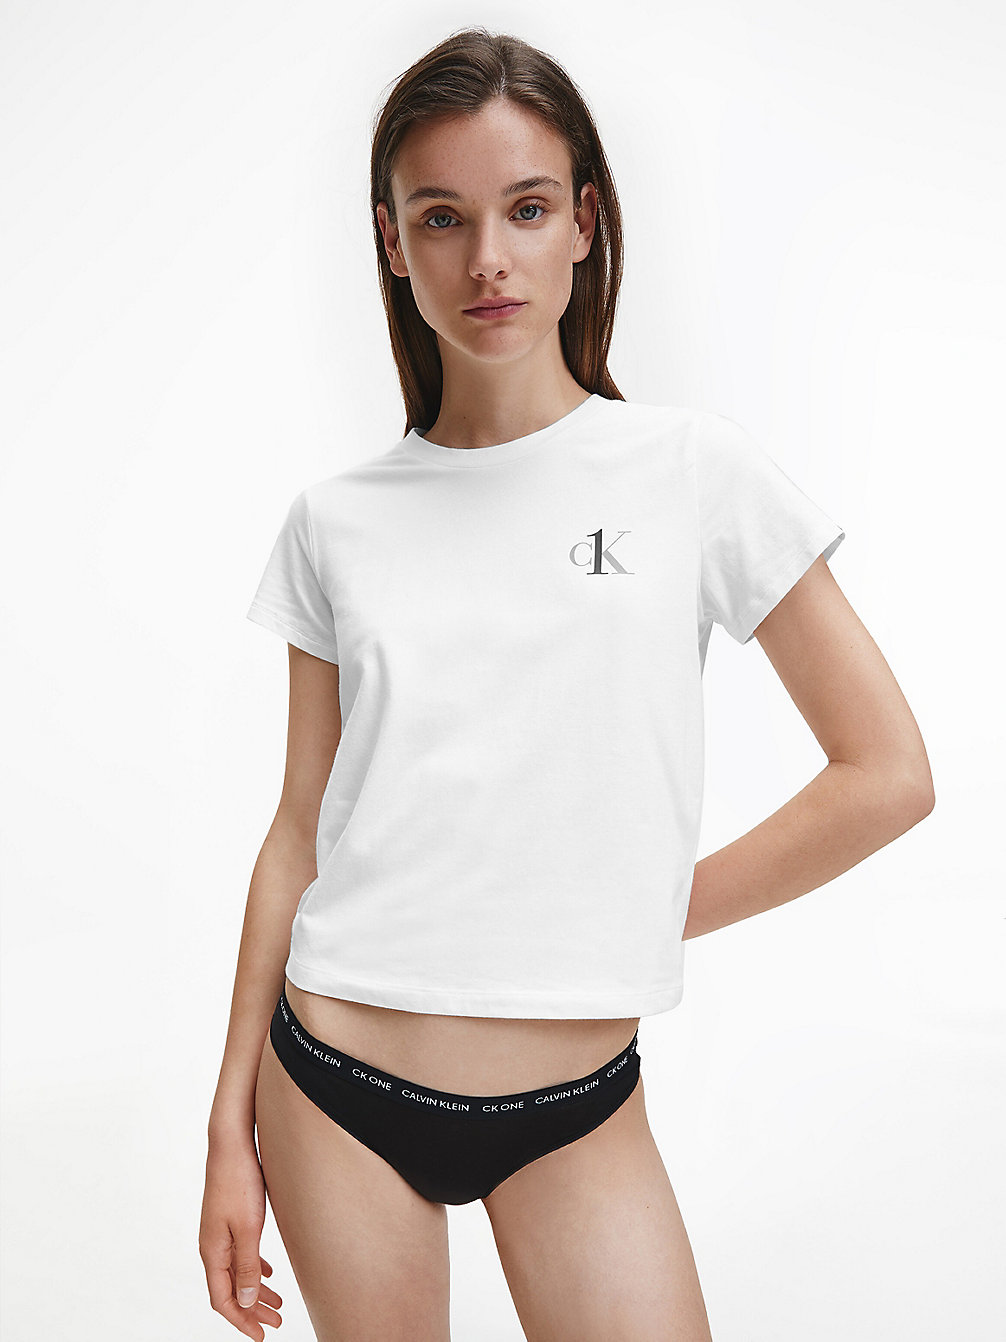 WHITE > Lounge-T-Shirt – CK One > undefined Damen - Calvin Klein